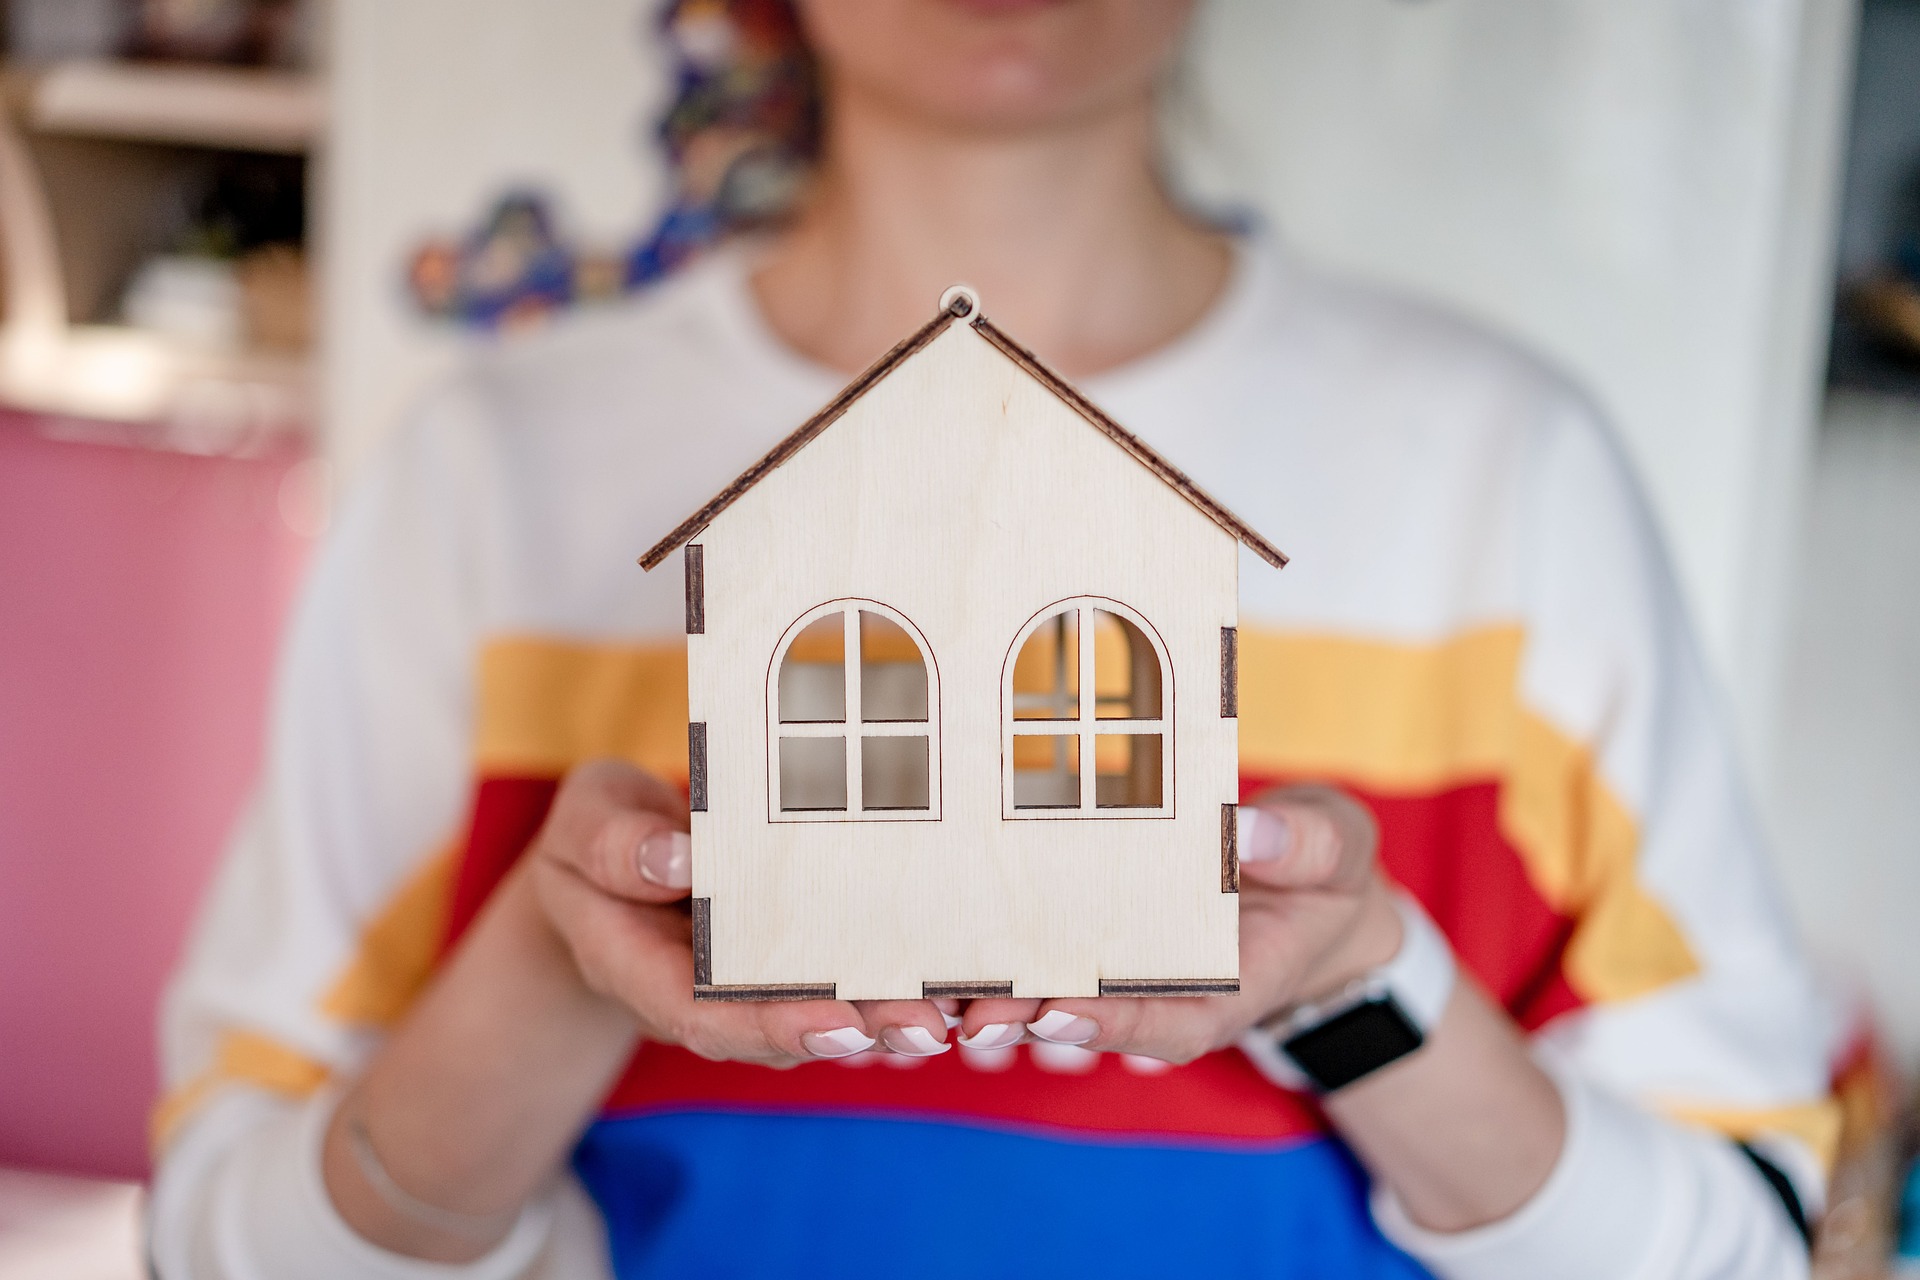 Kredyt hipoteczny – jak wygląda kwestia wcześniejszej spłaty?